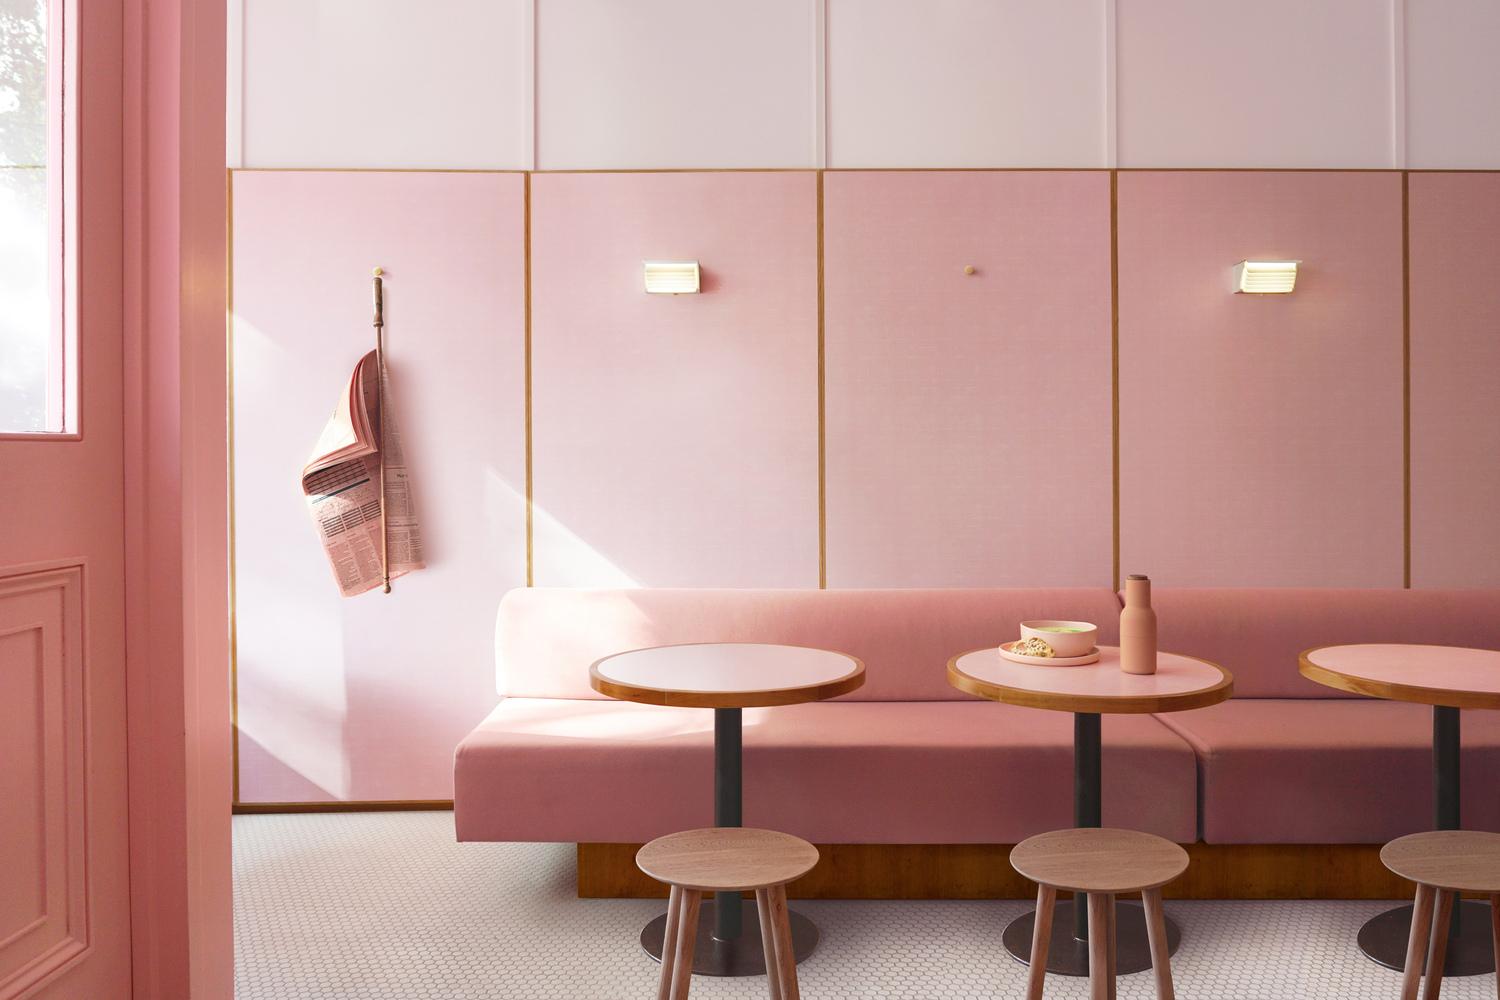 【倫敦必去粉色新餐廳】沿用電影建築風格 重塑50年代英國流行文化